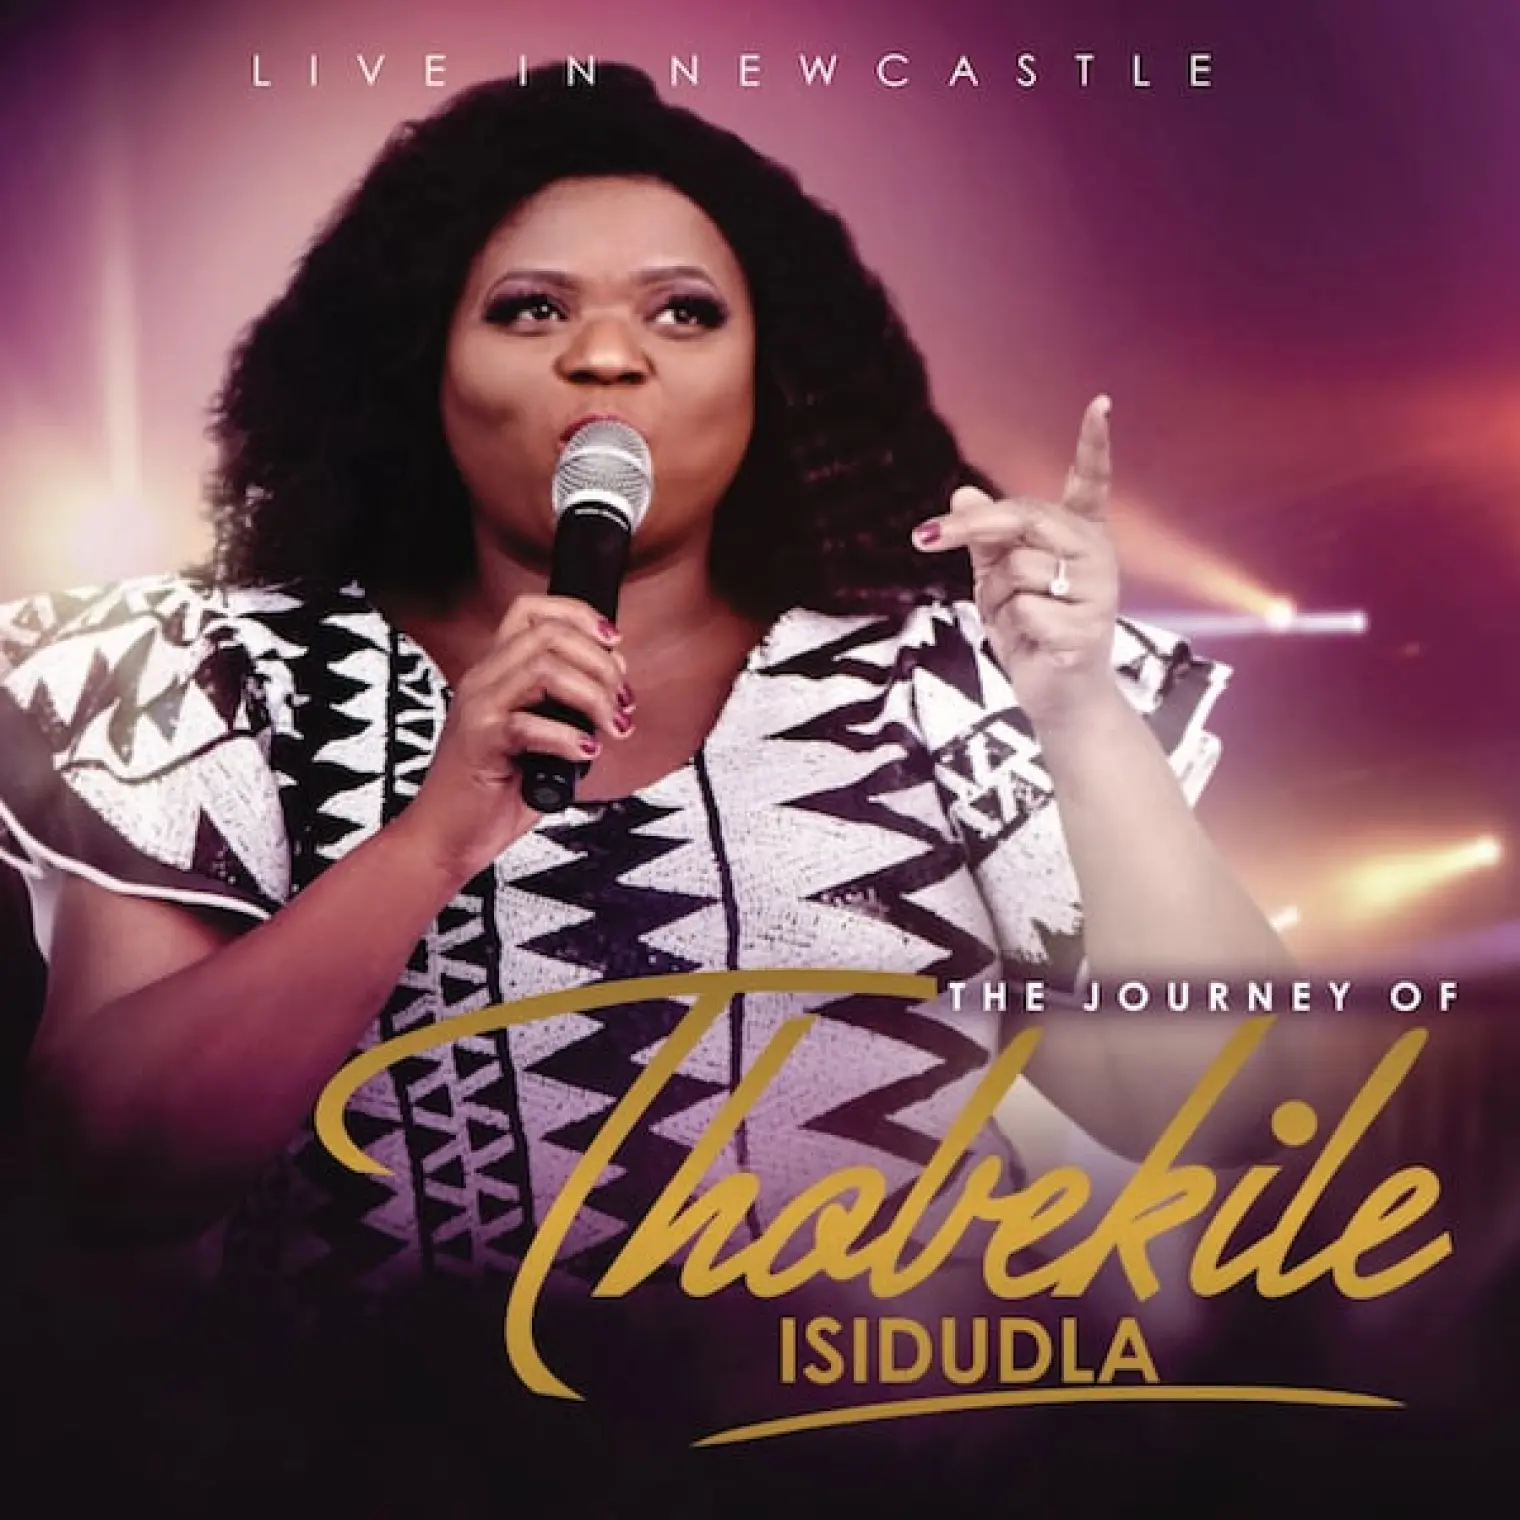 The Journey Of Thobekile Isidudla Live In Newcastle -  Thobekile 